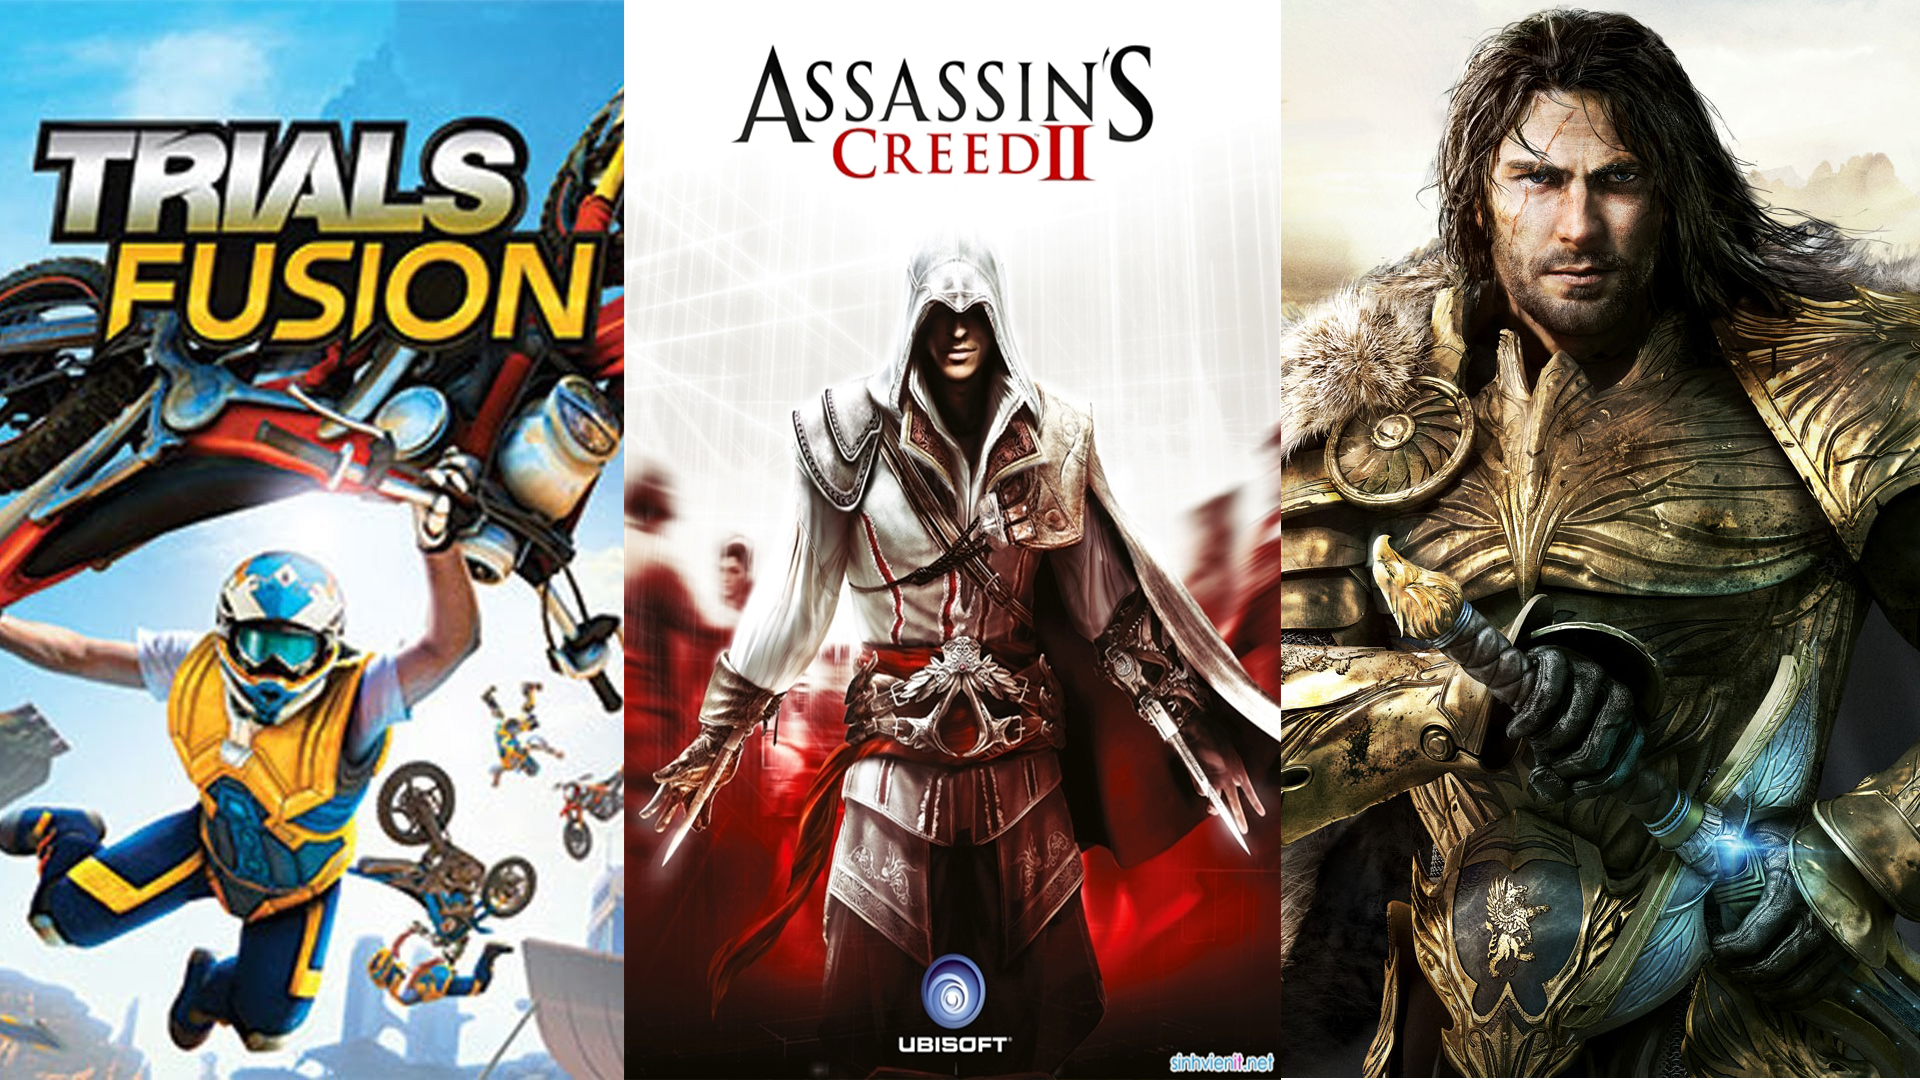 Nhanh tay sở hữu miễn phí 3 tựa game Trials Fusion, Assassin’s Creed II và Might & Magic Heroes VII từ Ubisoft